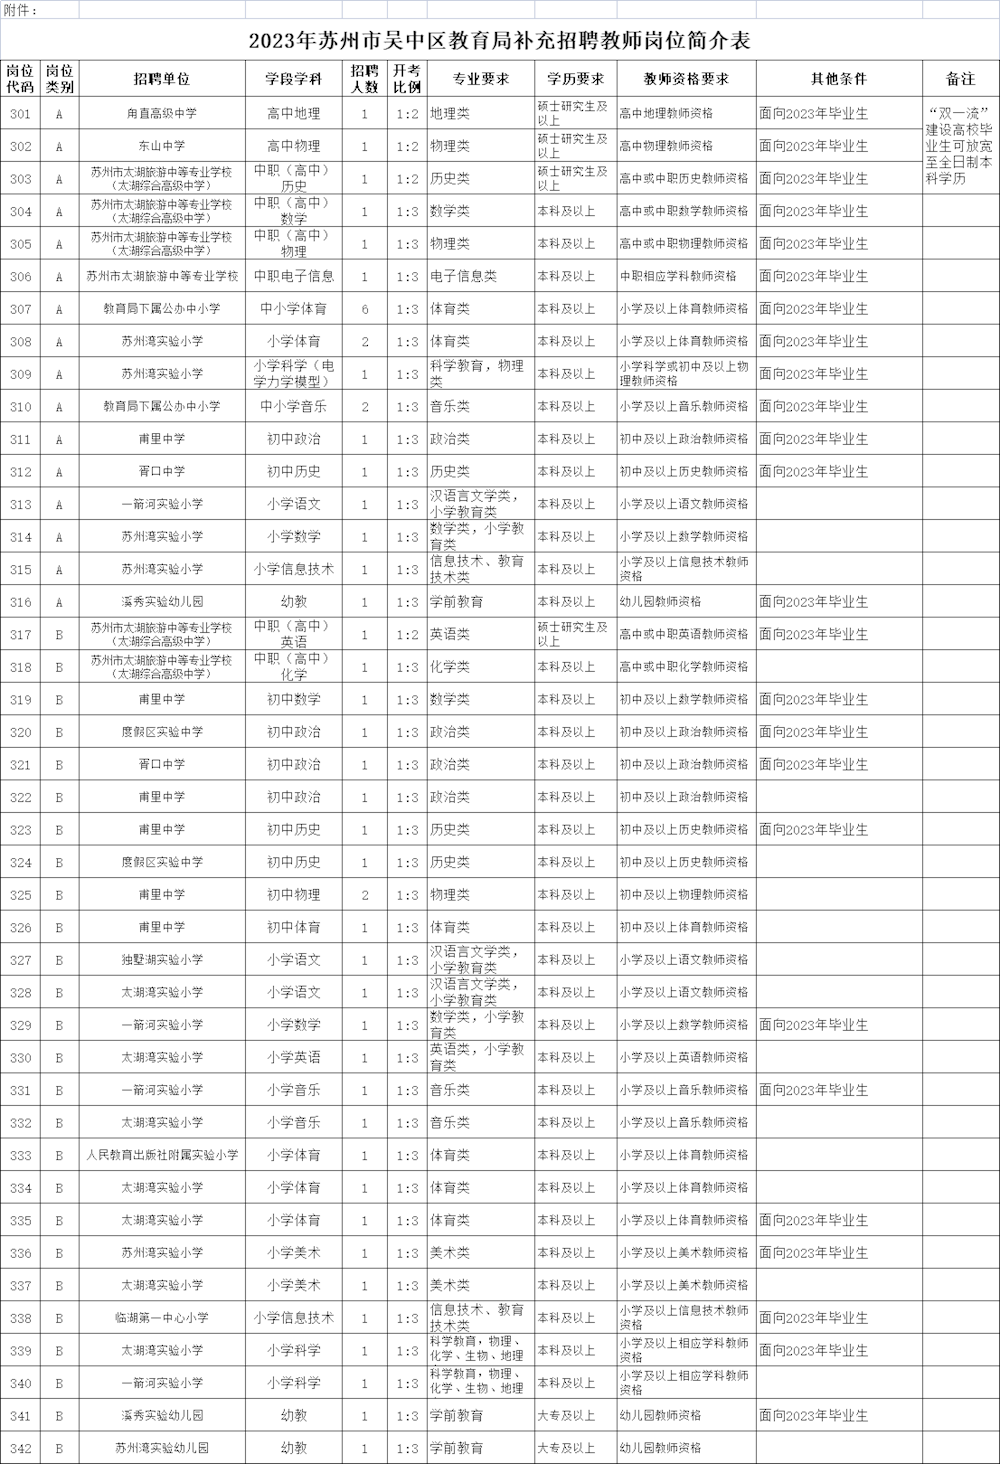 2023年苏州市吴中区教育局补充招聘教师岗位简介表